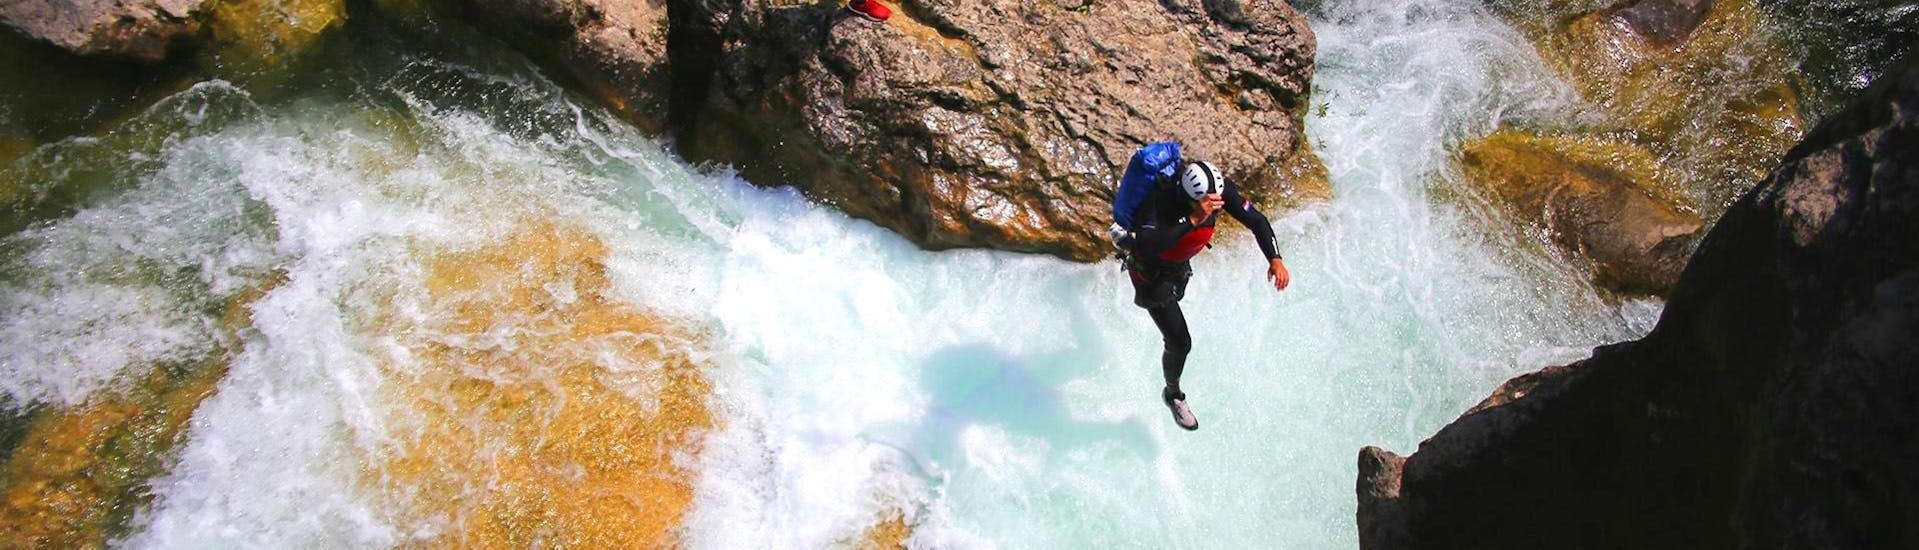 Una guida di canyoning da Adventure Dalmatia sta saltando in acqua durante il Canyoning per principianti al fiume Cetina.